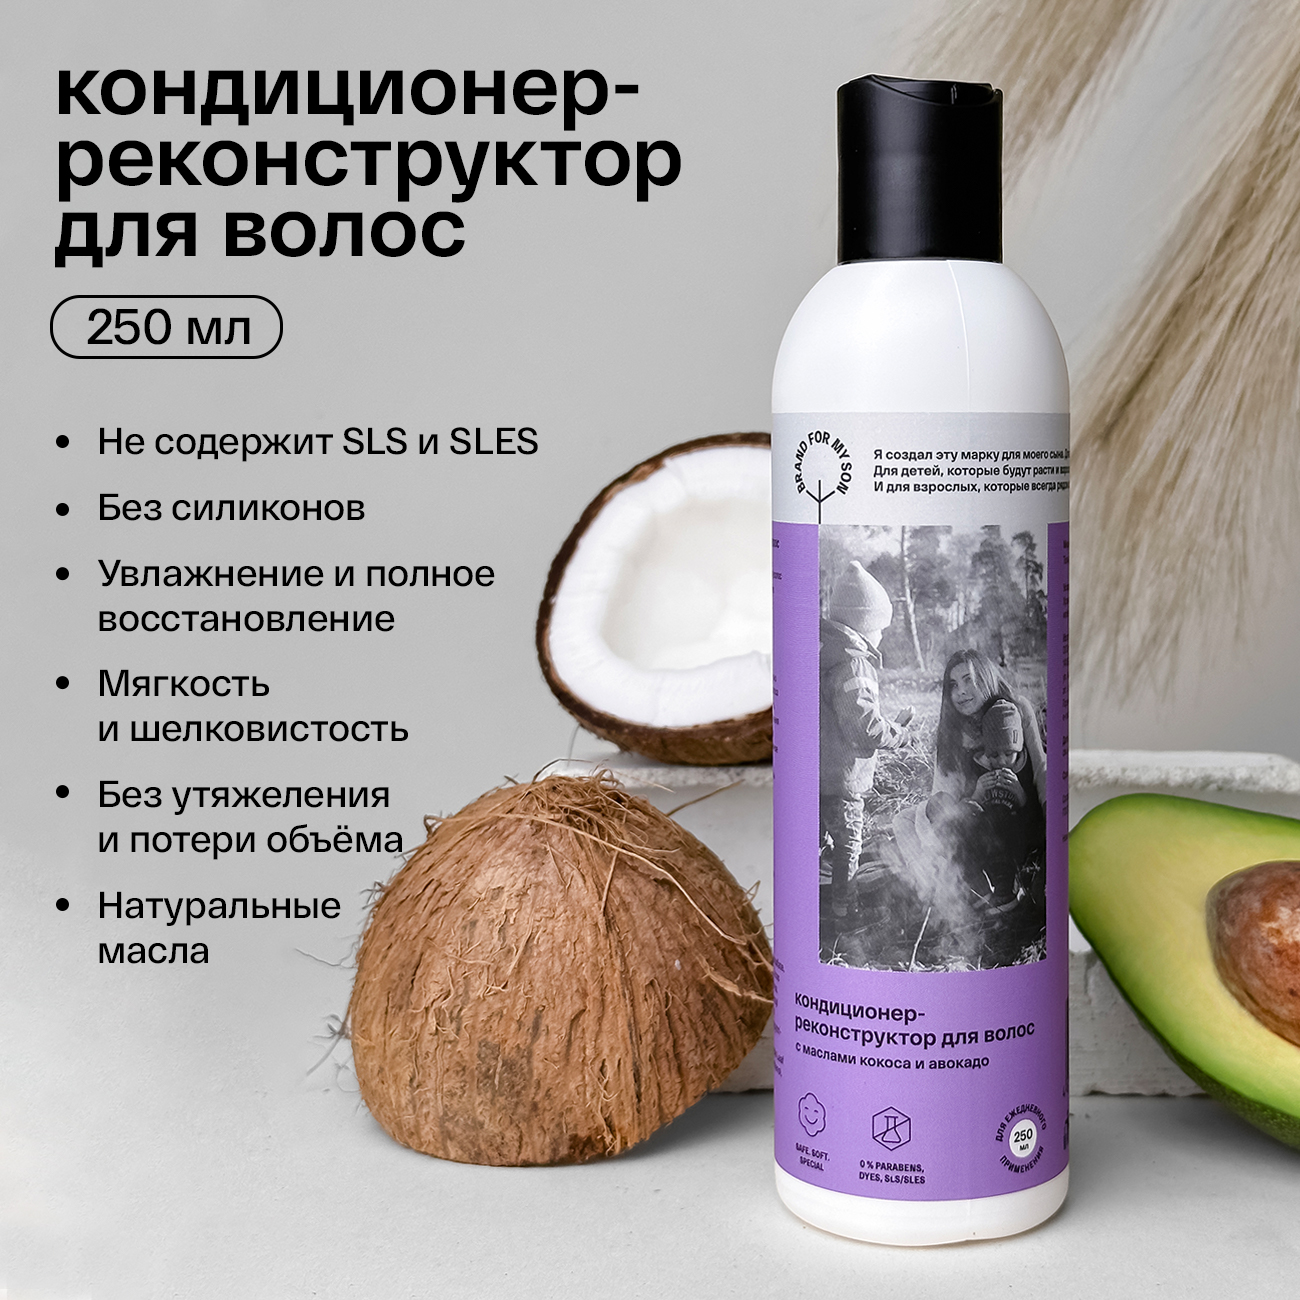 Brand For My Son Кондиционер-реконструктор для волос с маслами кокоса и авокадо, 250 мл FP003 - фото 2